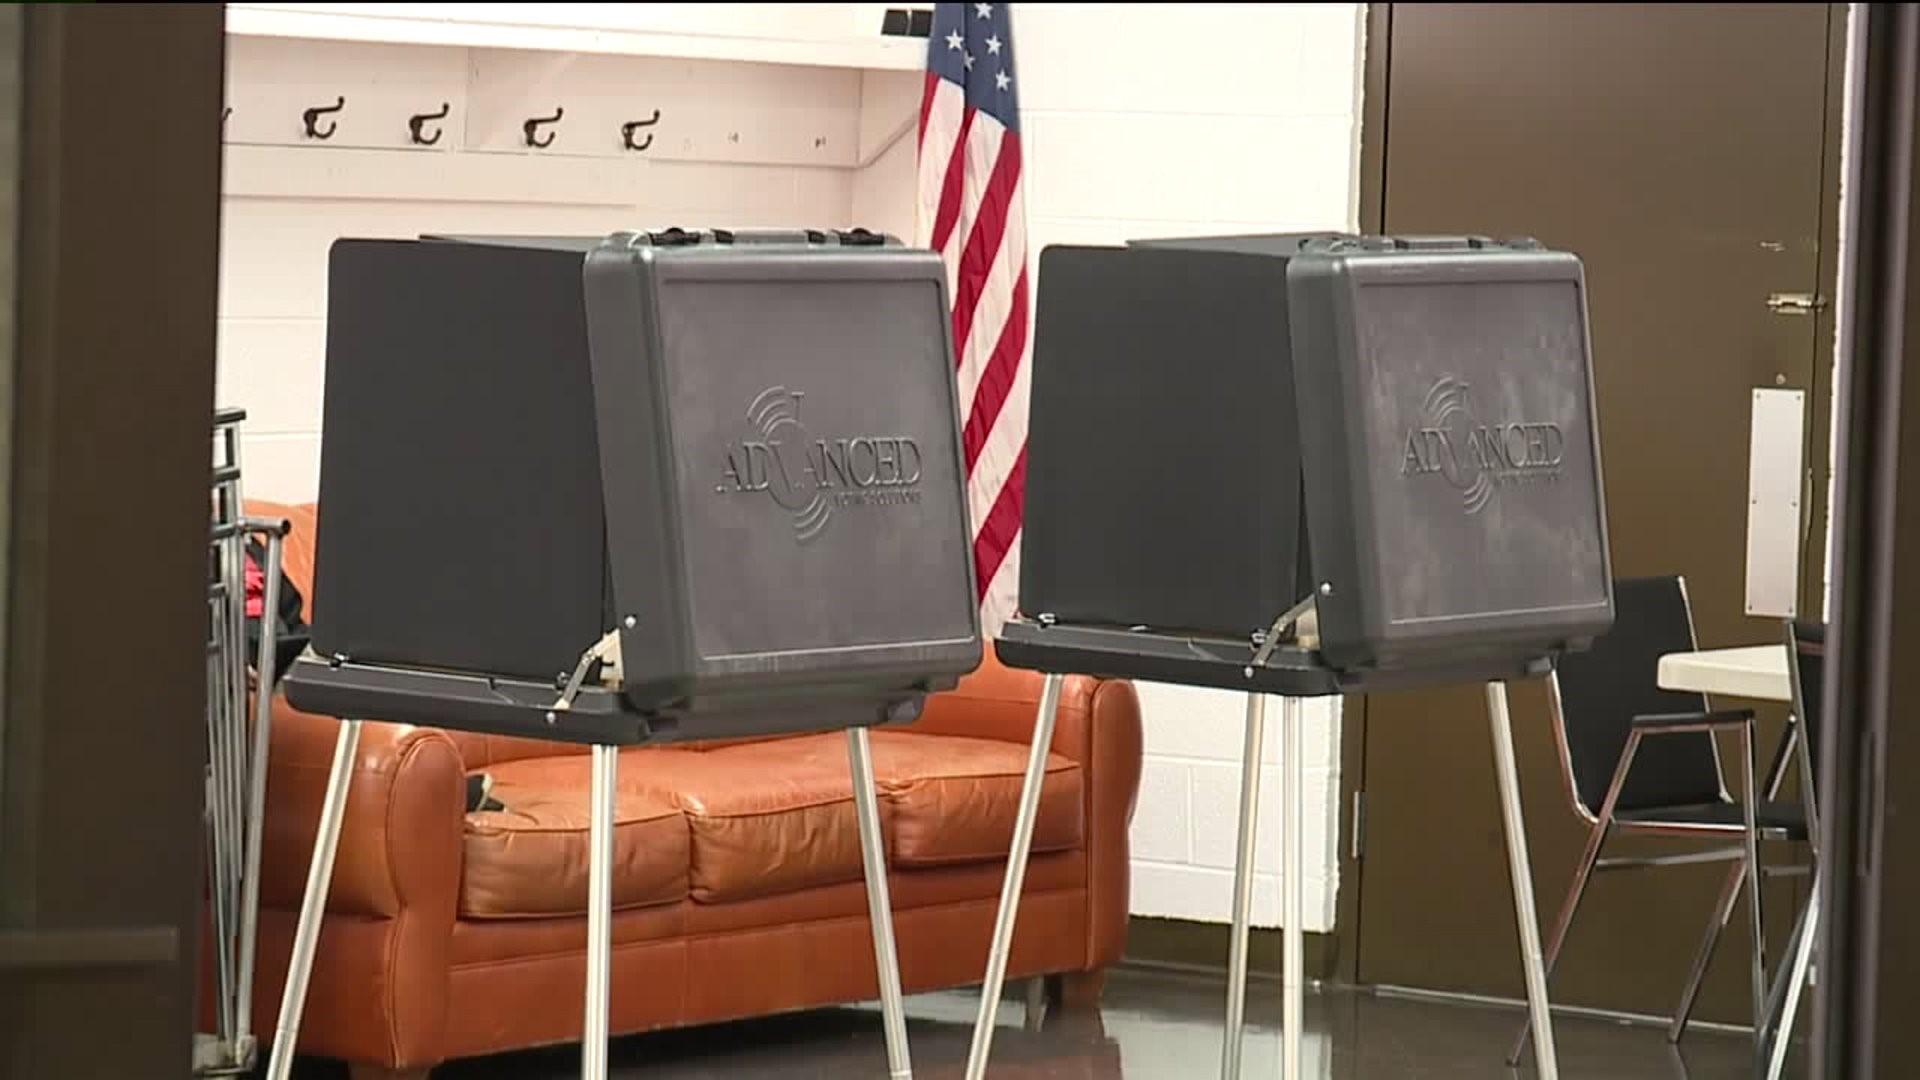 Voting Delayed in Taylor Precinct